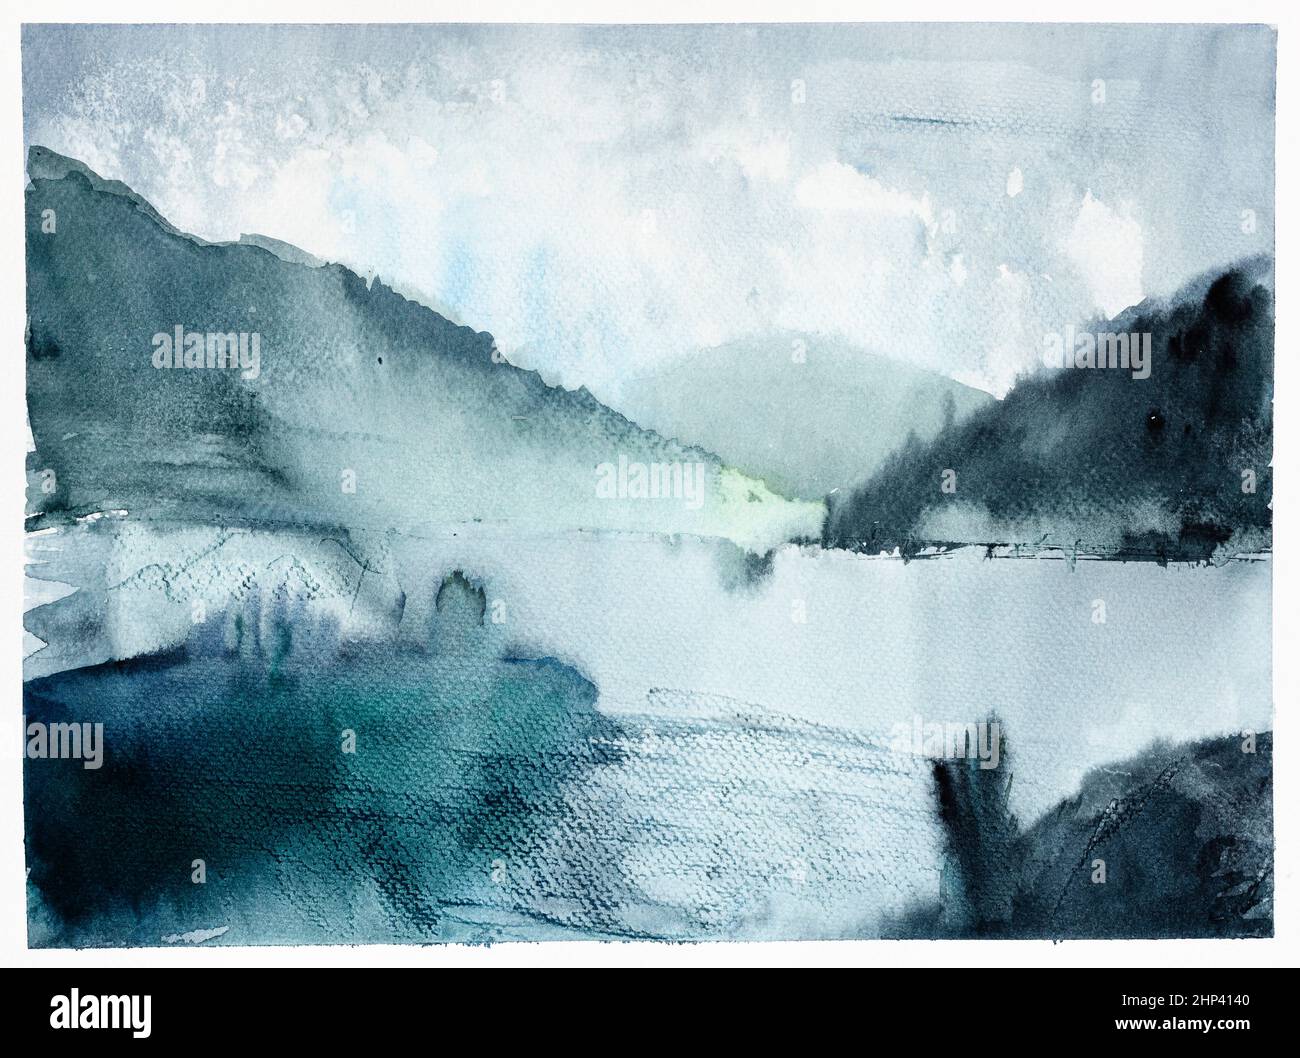 Vista del fiordo in Norvegia al crepuscolo estivo disegnata a mano da acquerelli su carta bianca testurizzata Foto Stock